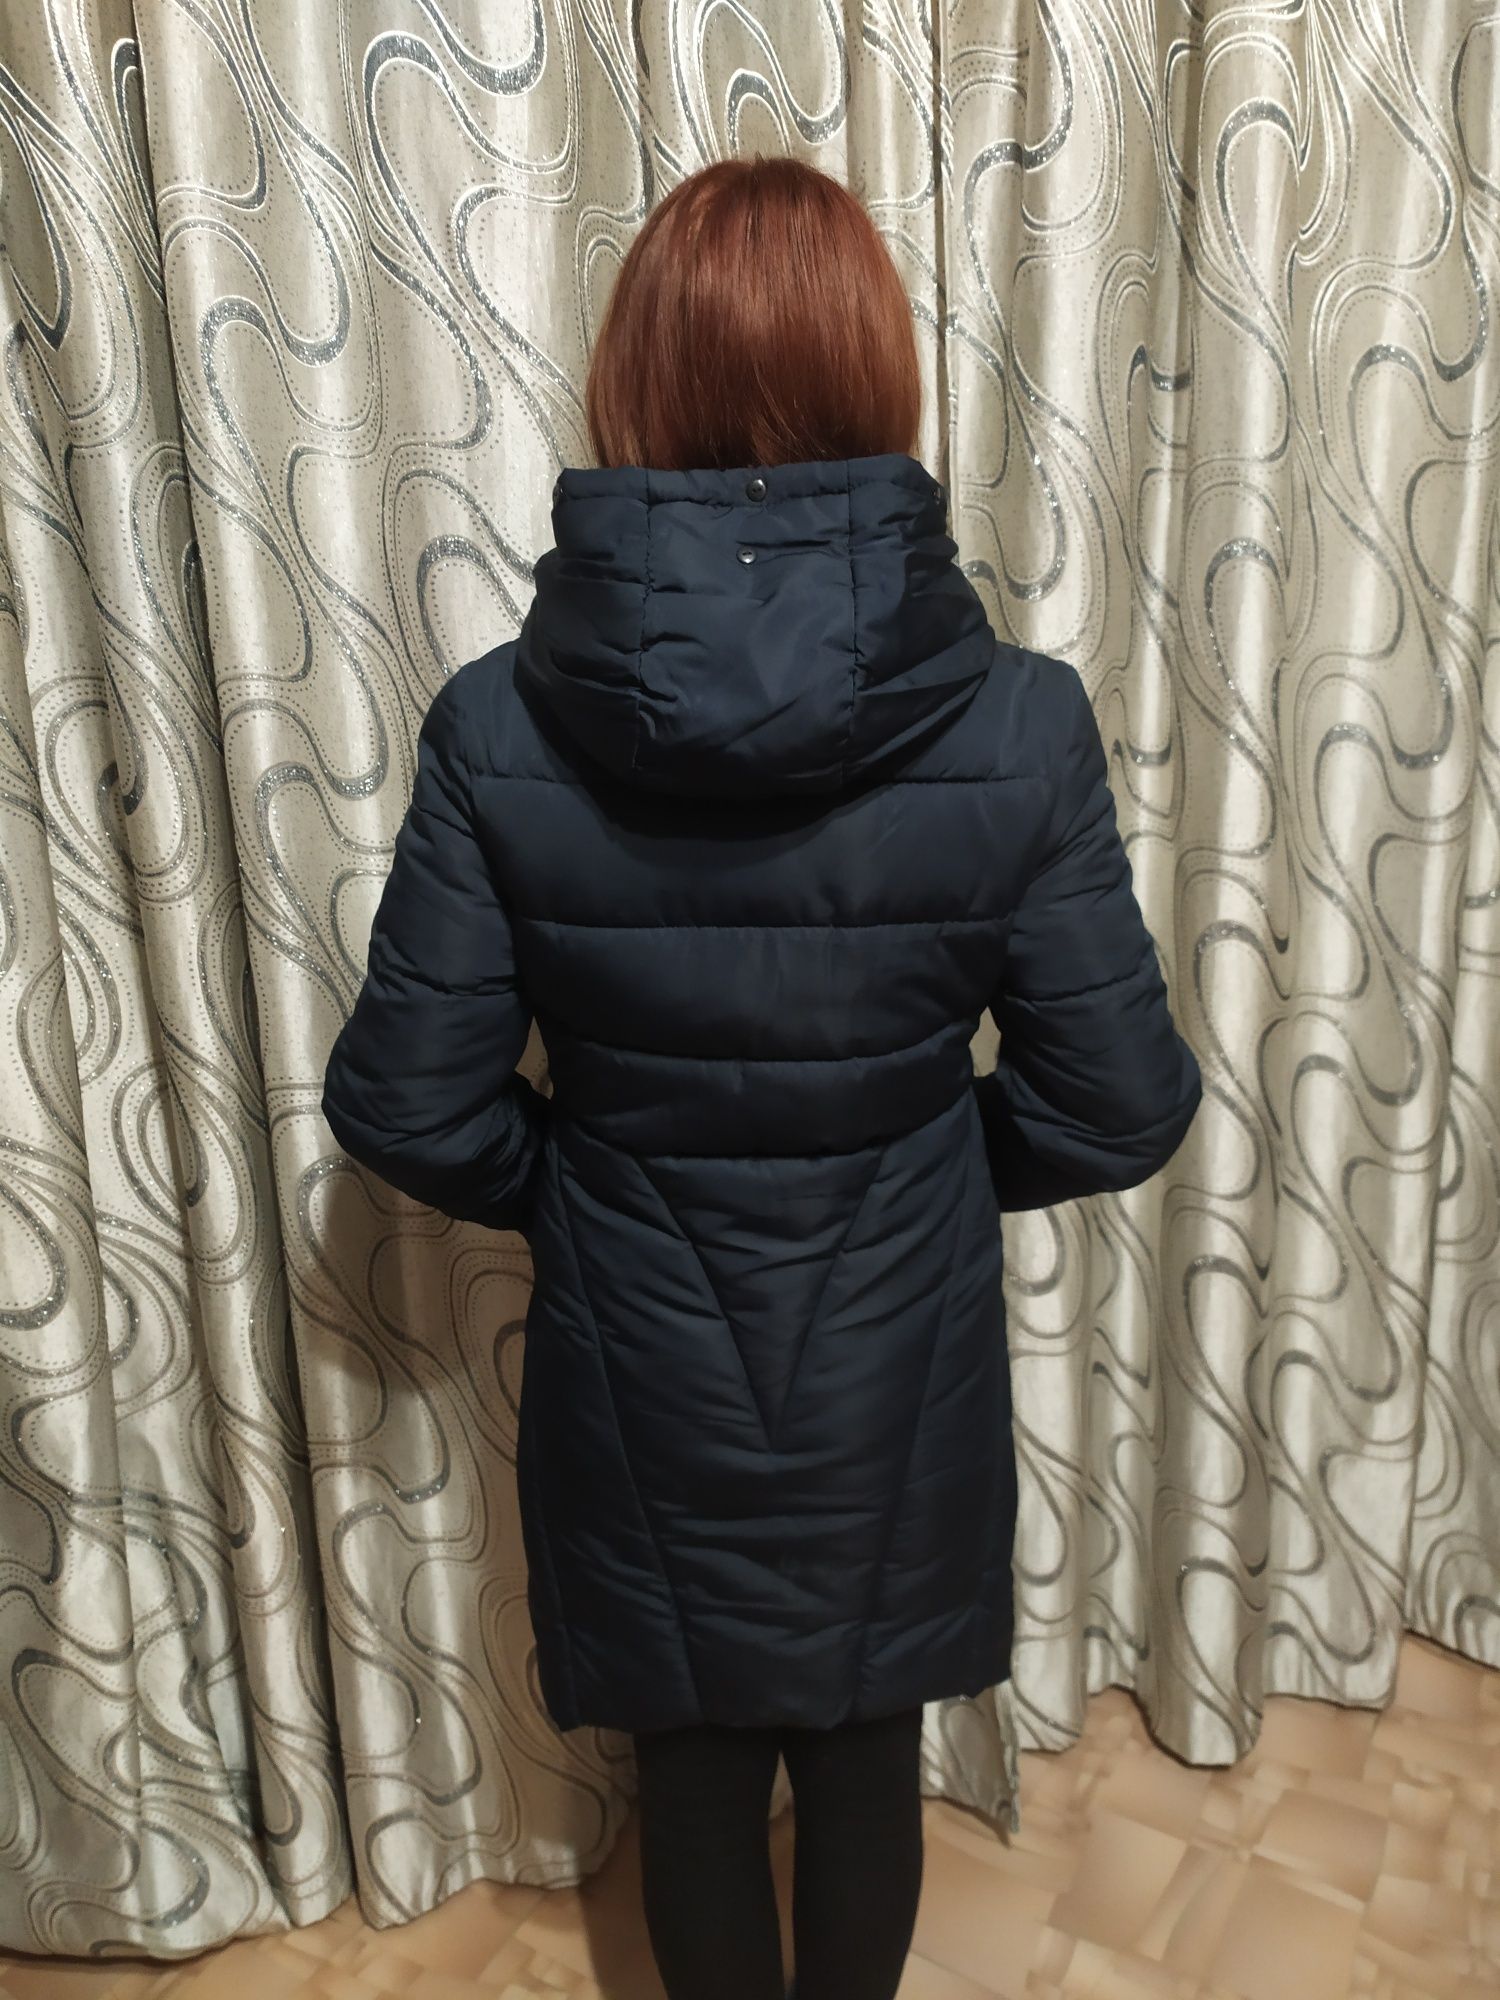 Куртка зимняя 44